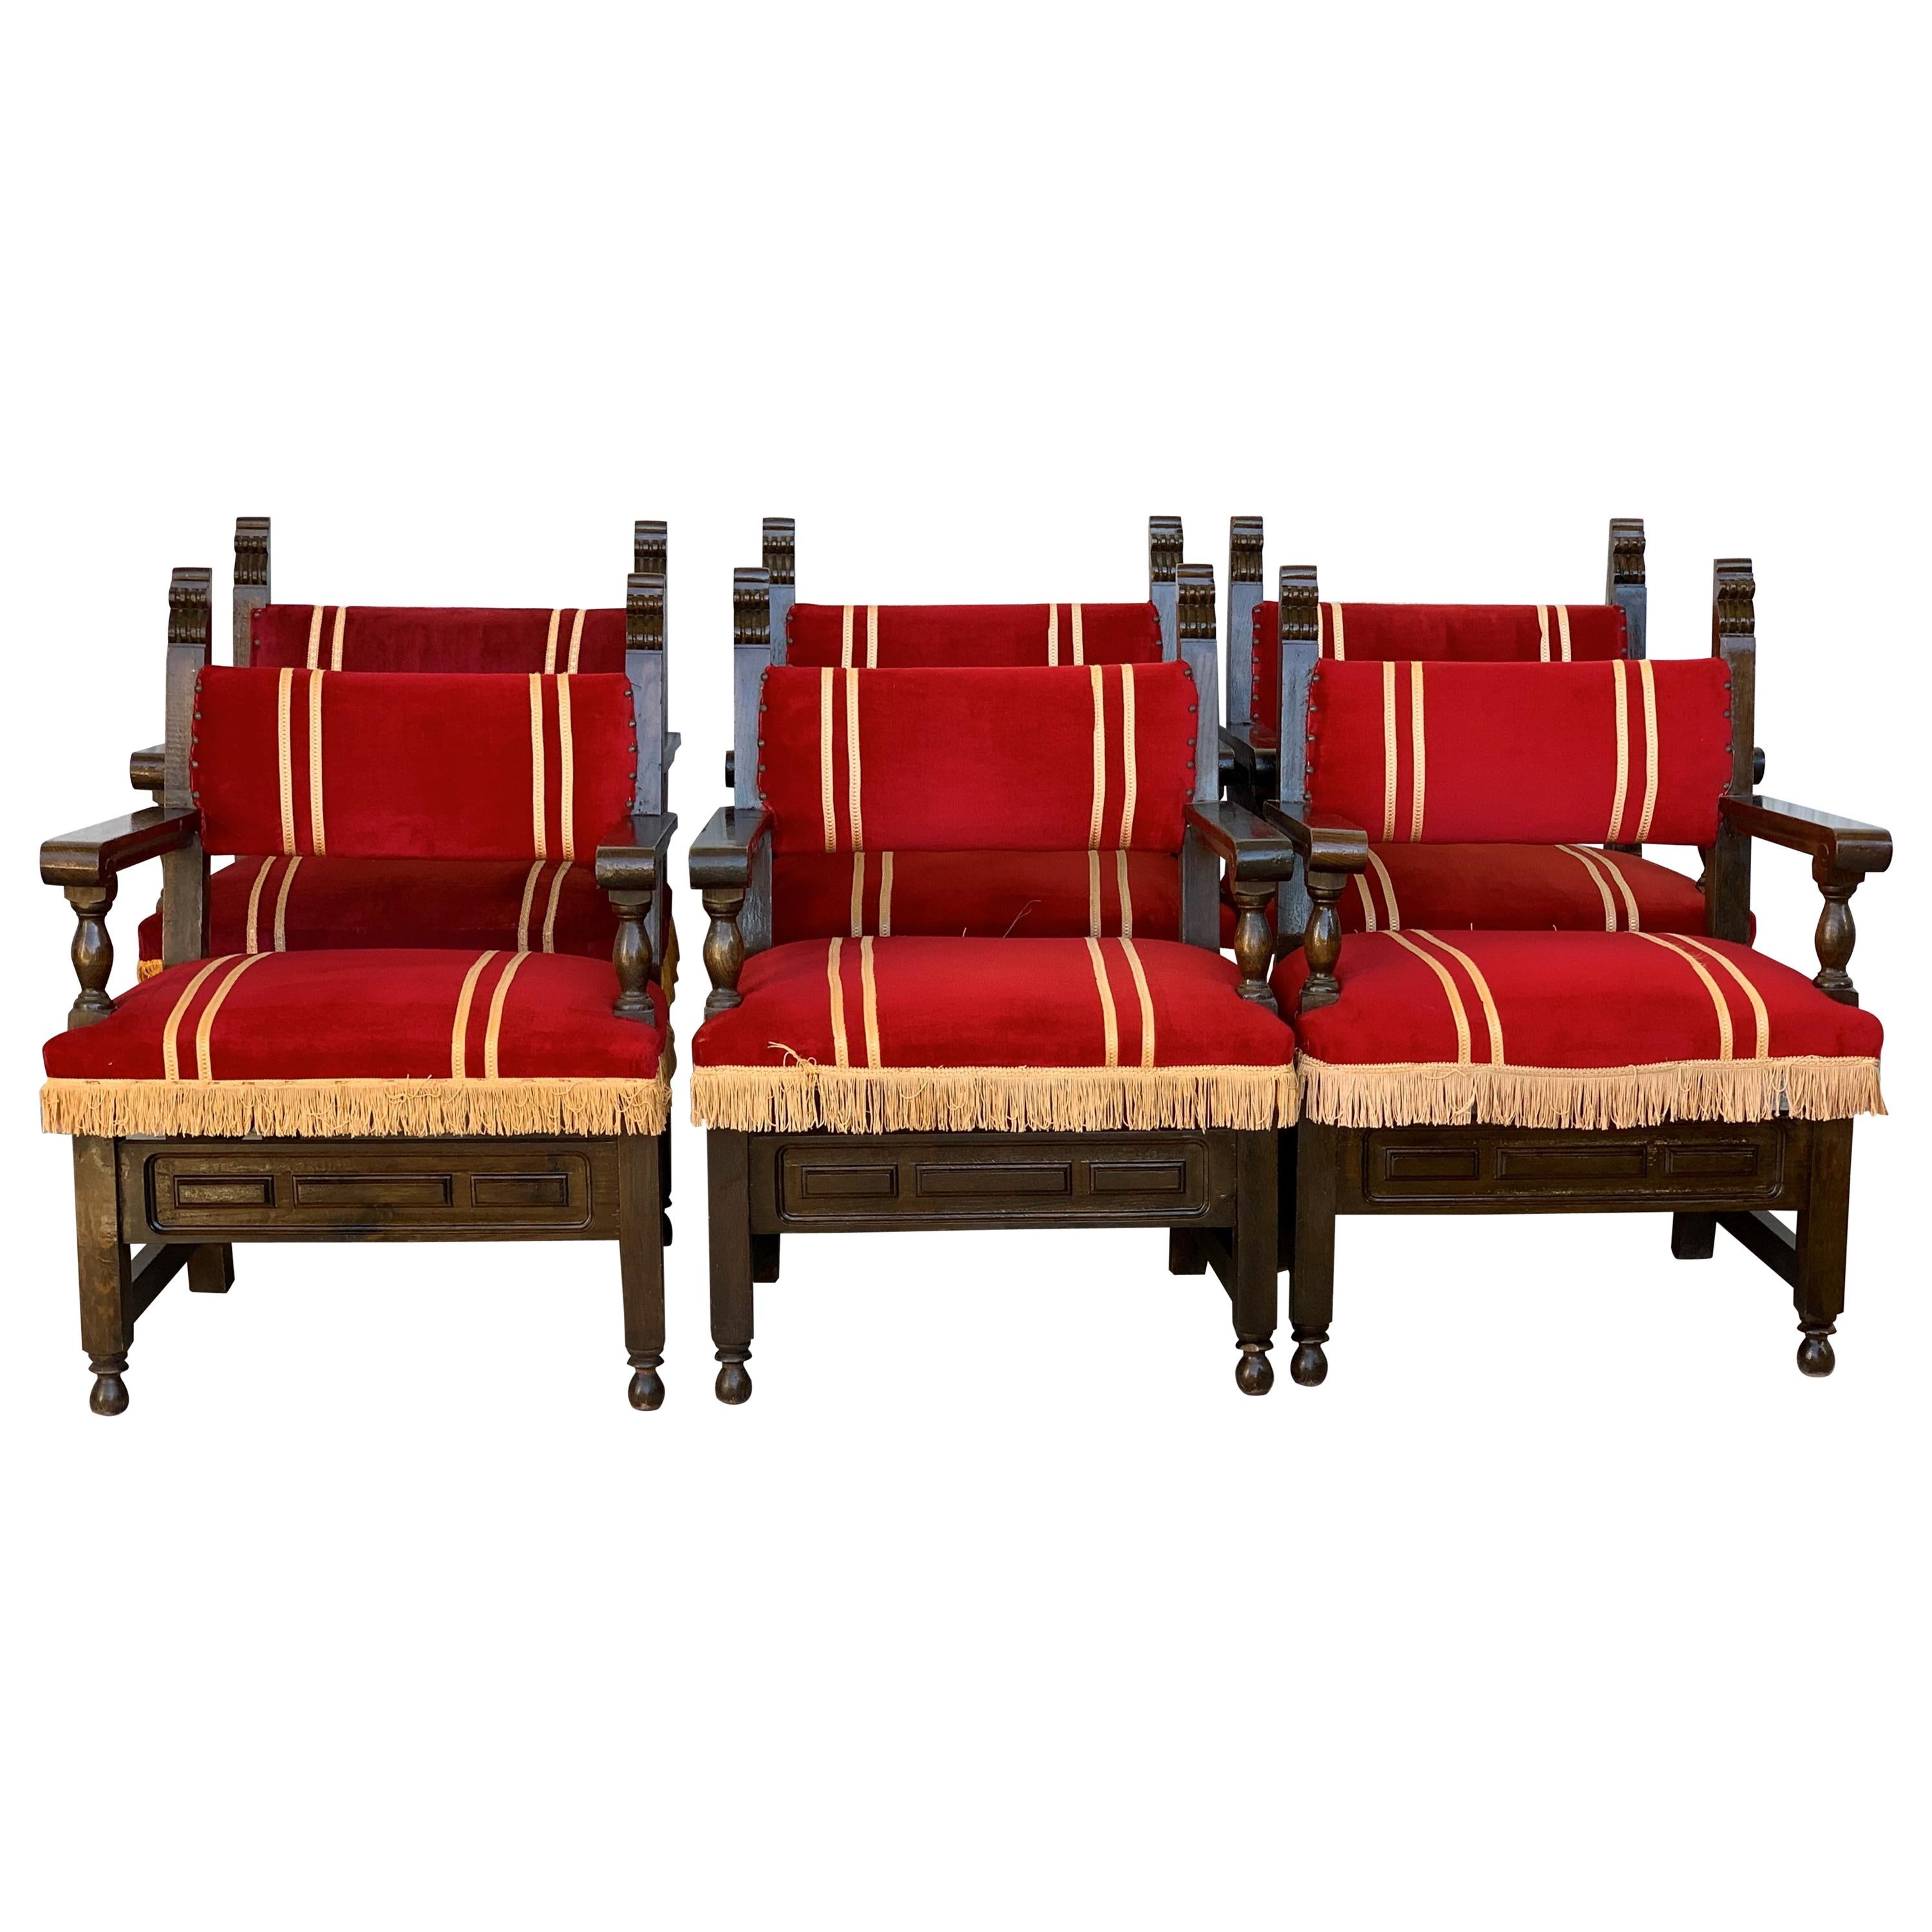 fauteuils bas espagnols du XIXe siècle en noyer sculpté et tapisserie en velours rouge orné de franges jaunes.
Très très confortable et résistant
Il provient d'un casino espagnol
46 unités disponibles

Idéal pour un hôtel, un bistro-bar, un